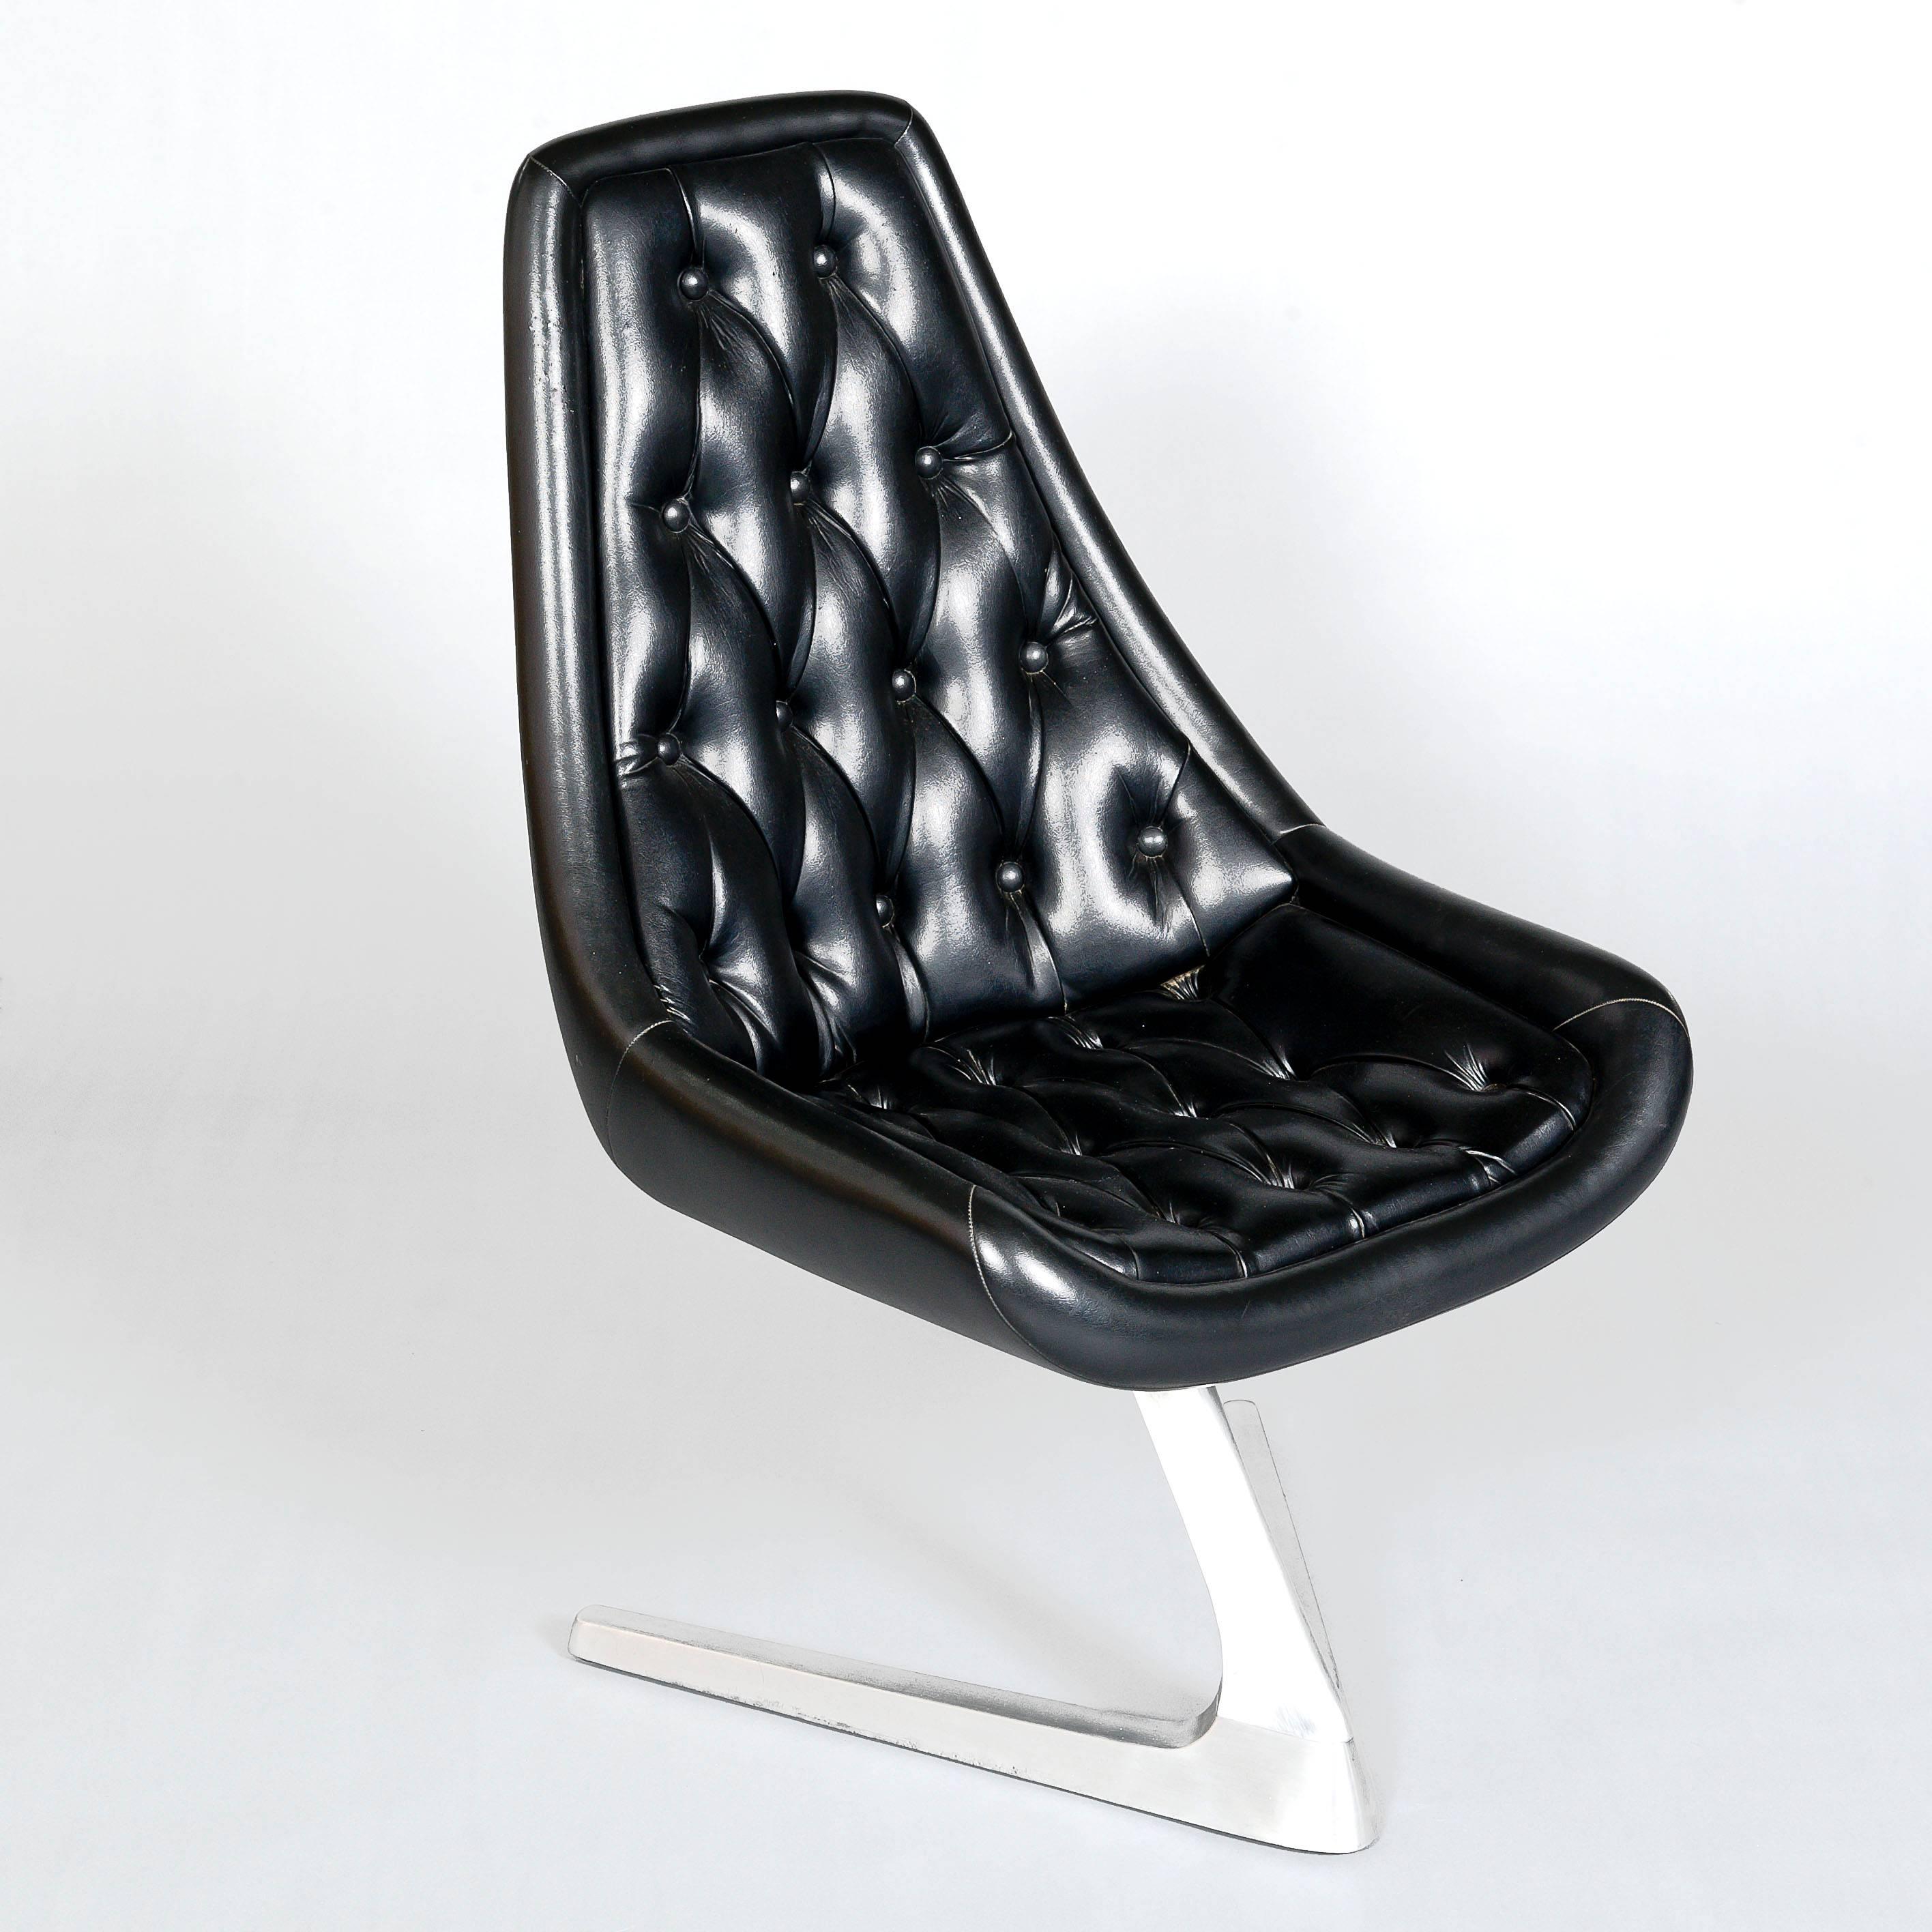 Dieses Modell des Chromcraft-Stuhls wurde in der Original-Star Trek-Serie verwendet. Kürzlich neu gepolstert in weichem schwarzem Leder, haben wir sieben Stühle zur Verfügung. Wir haben auch vier Sculpta-Stühle mit Vinylpolsterung (Fotos auf